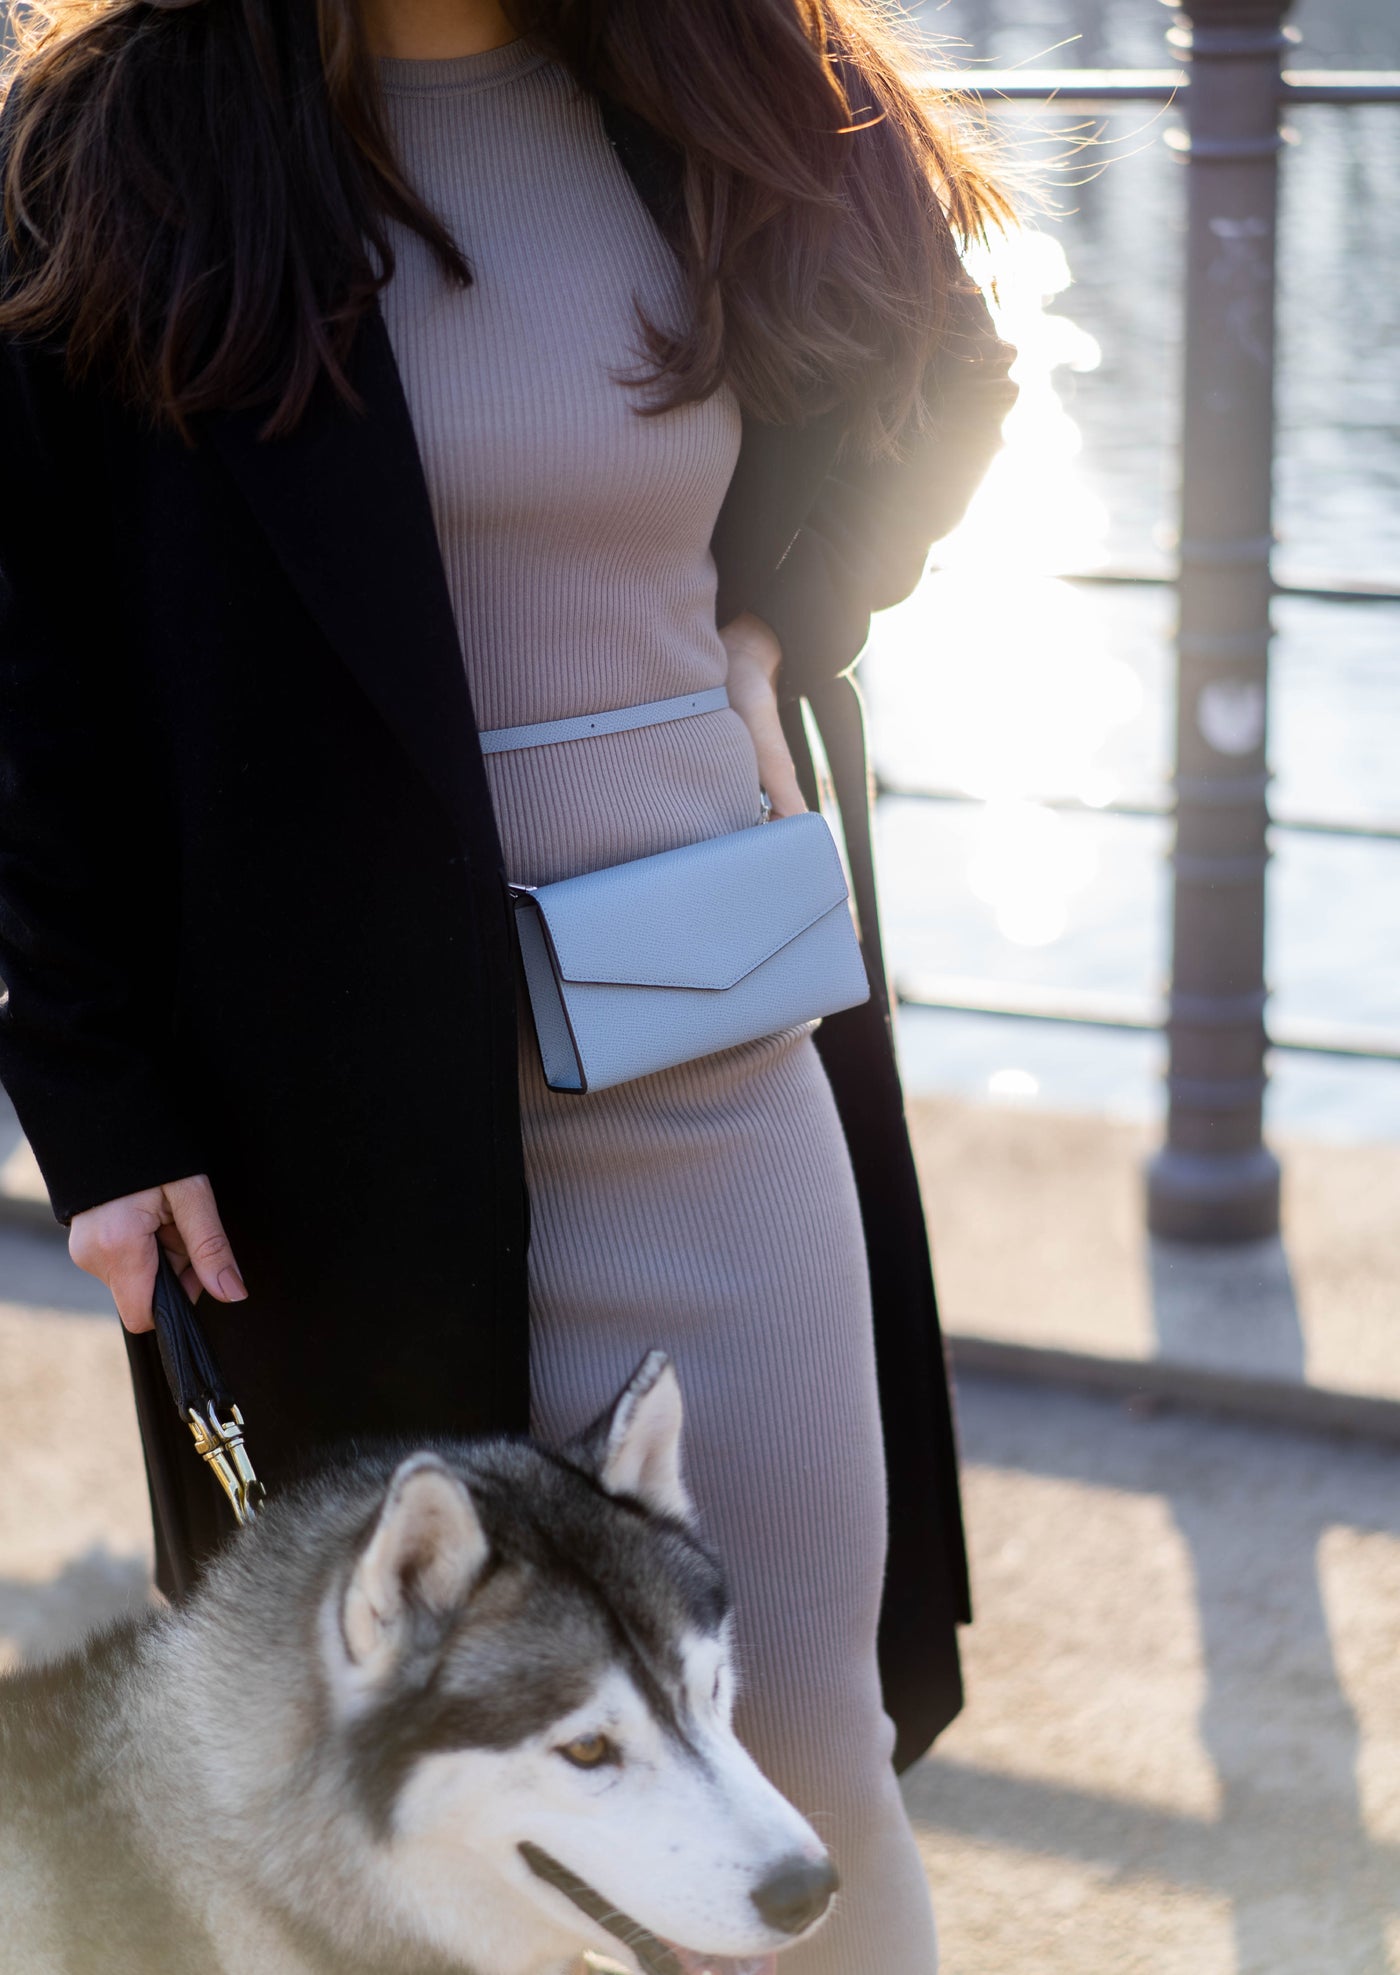 Detailansicht einer hochwertigen BONAVENTURA Lederhandtasche an einer stilvoll gekleideten Frau, die mit ihrem Hund spazieren geht.